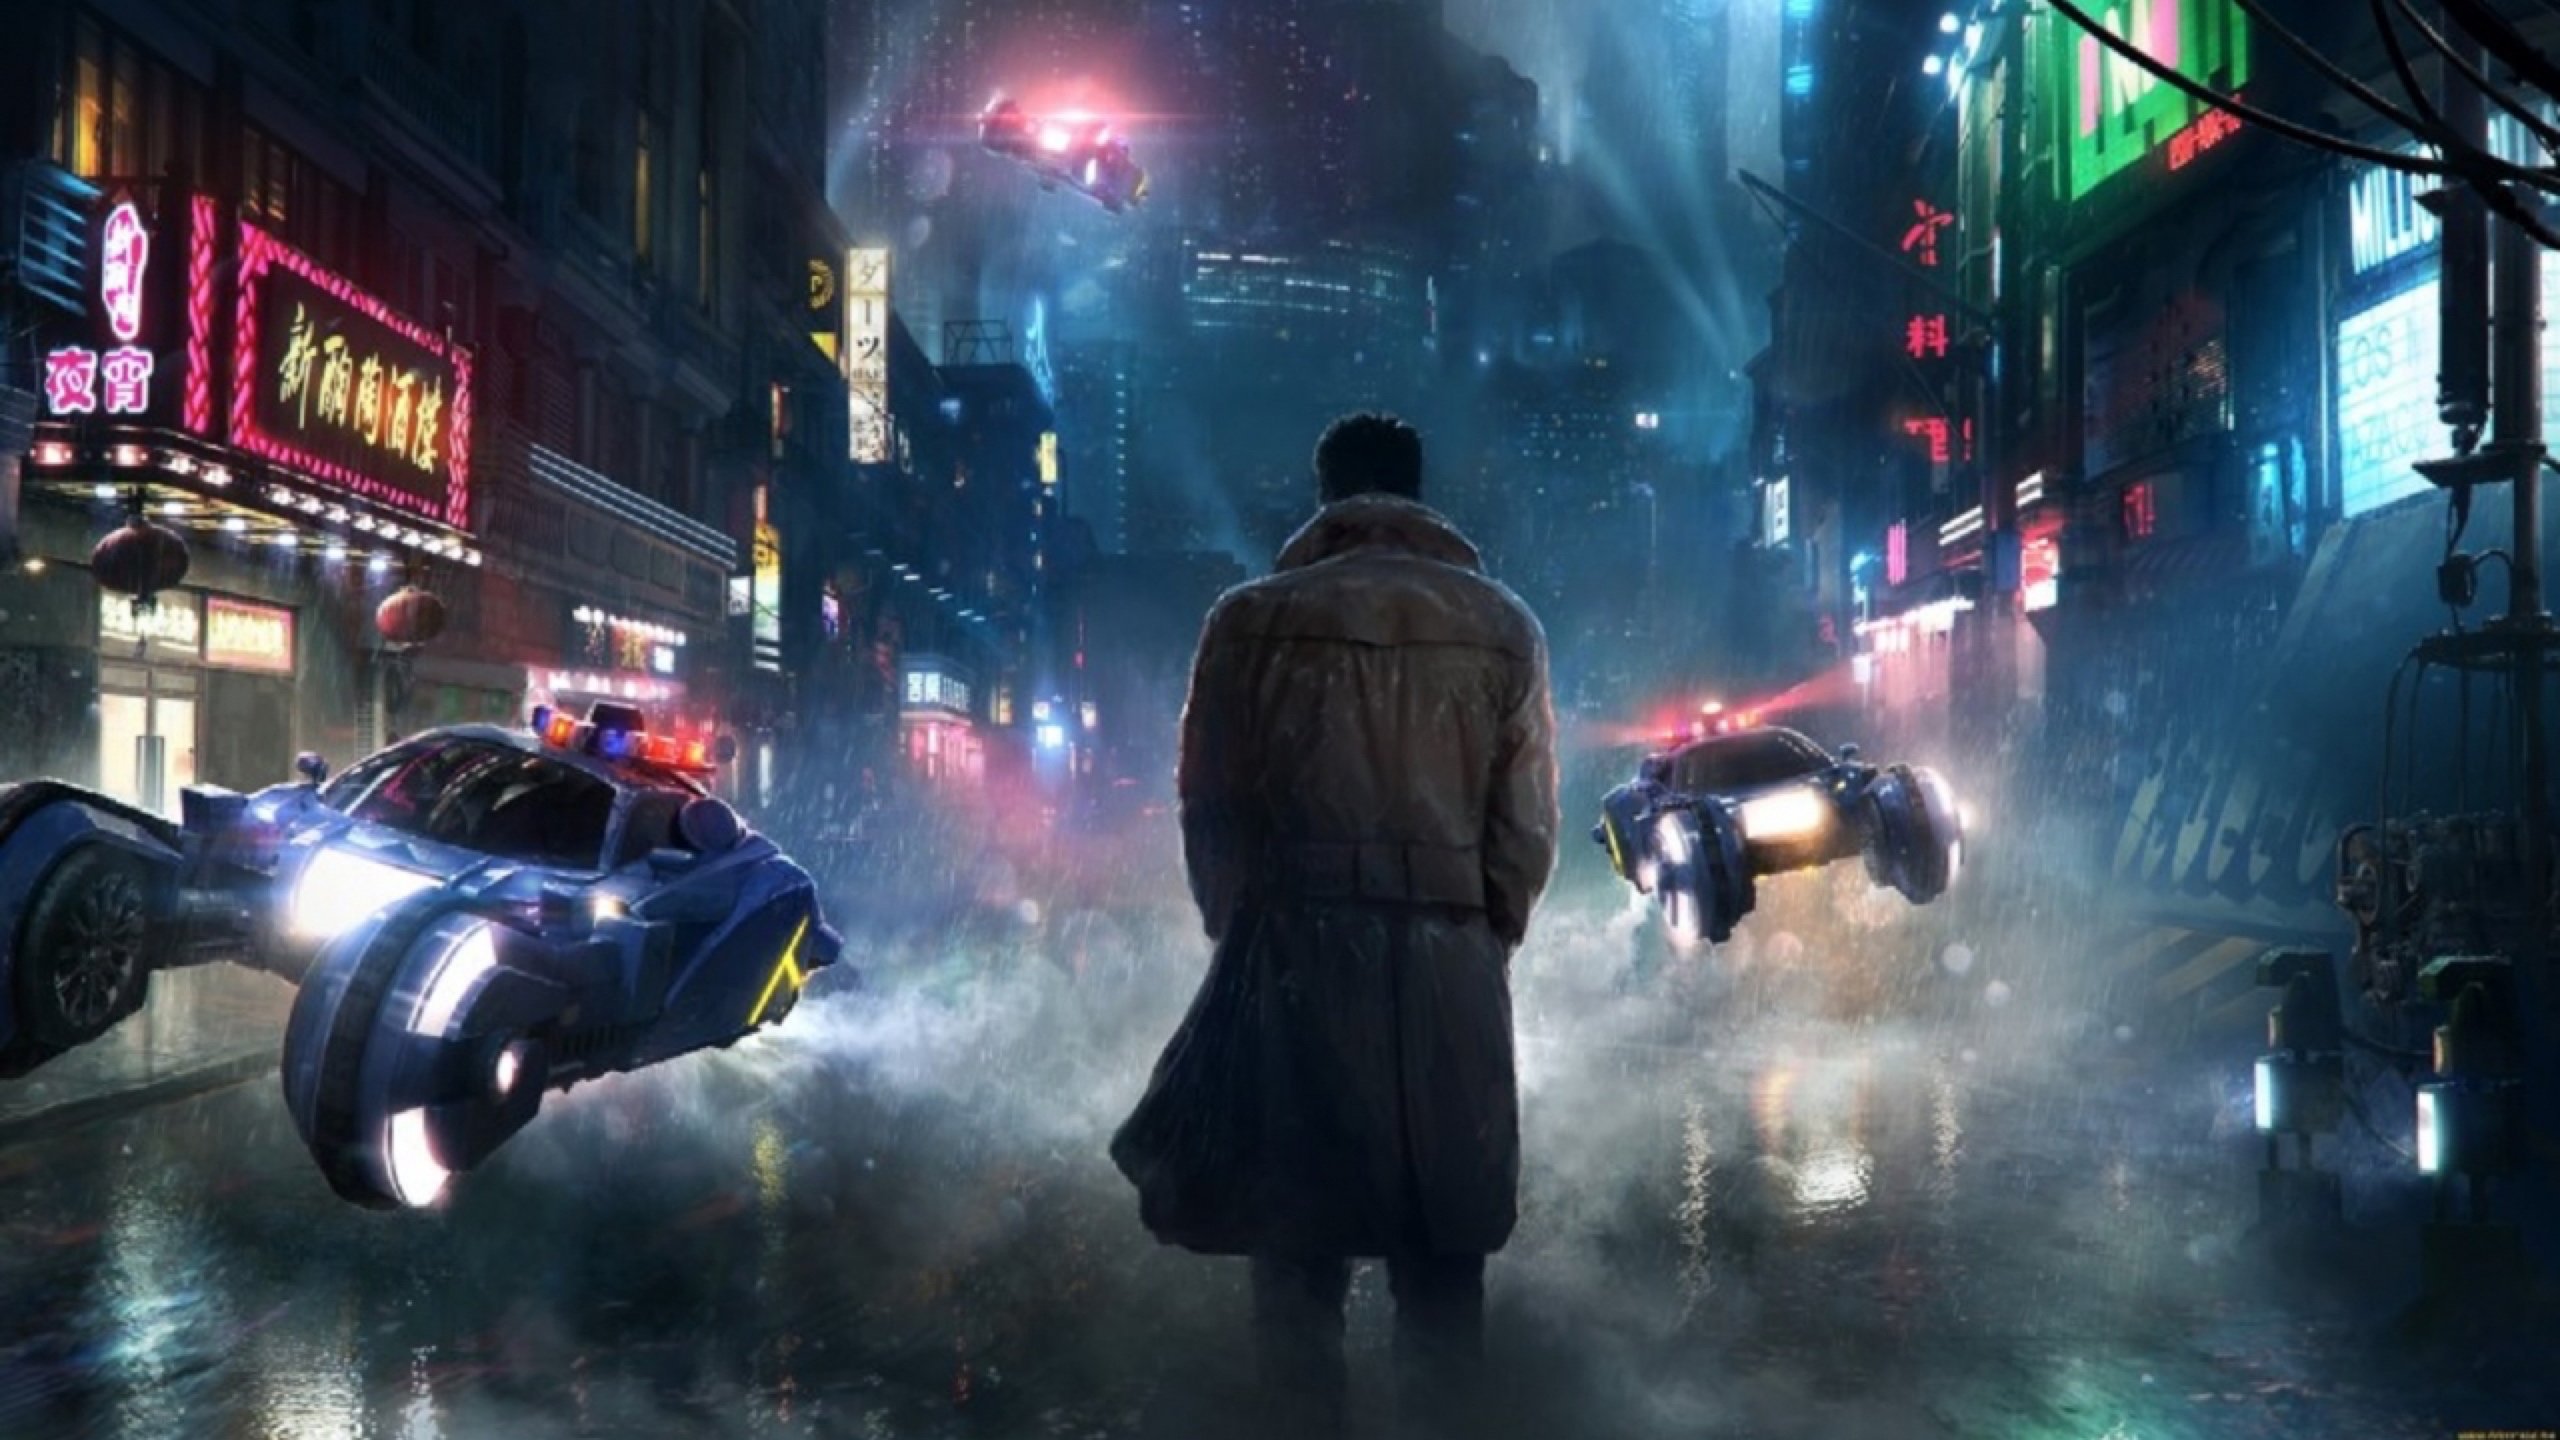 Ya tenemos las primeras imágenes de la secuela de Blade Runner